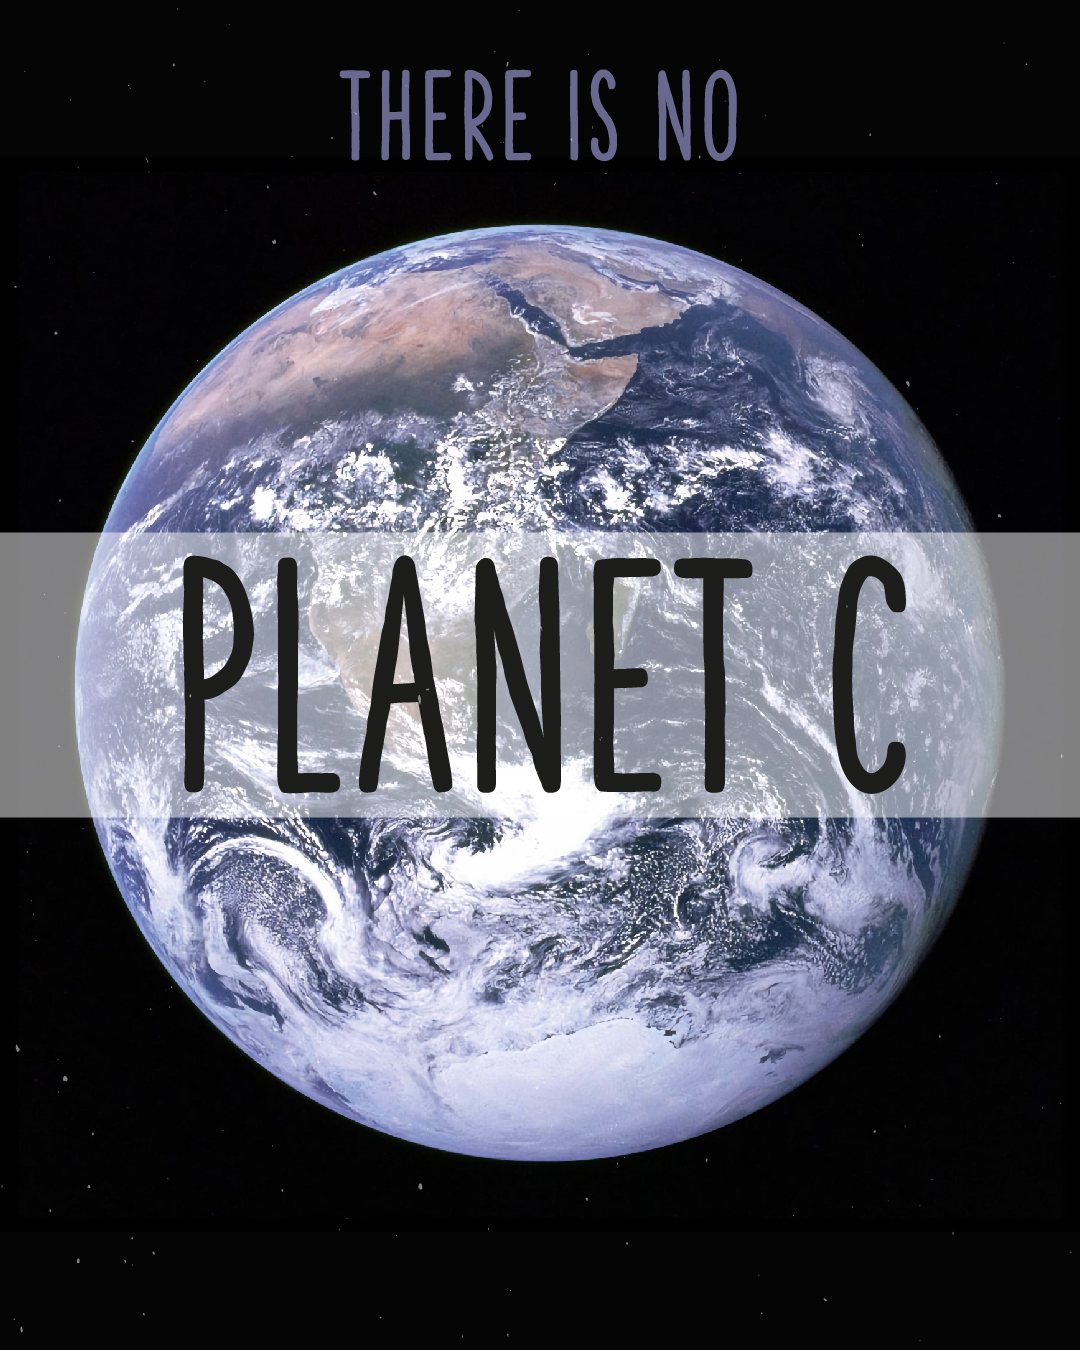 Erdkugel auf schwarzem Hintergrund. Text in der Mitte: Planet C